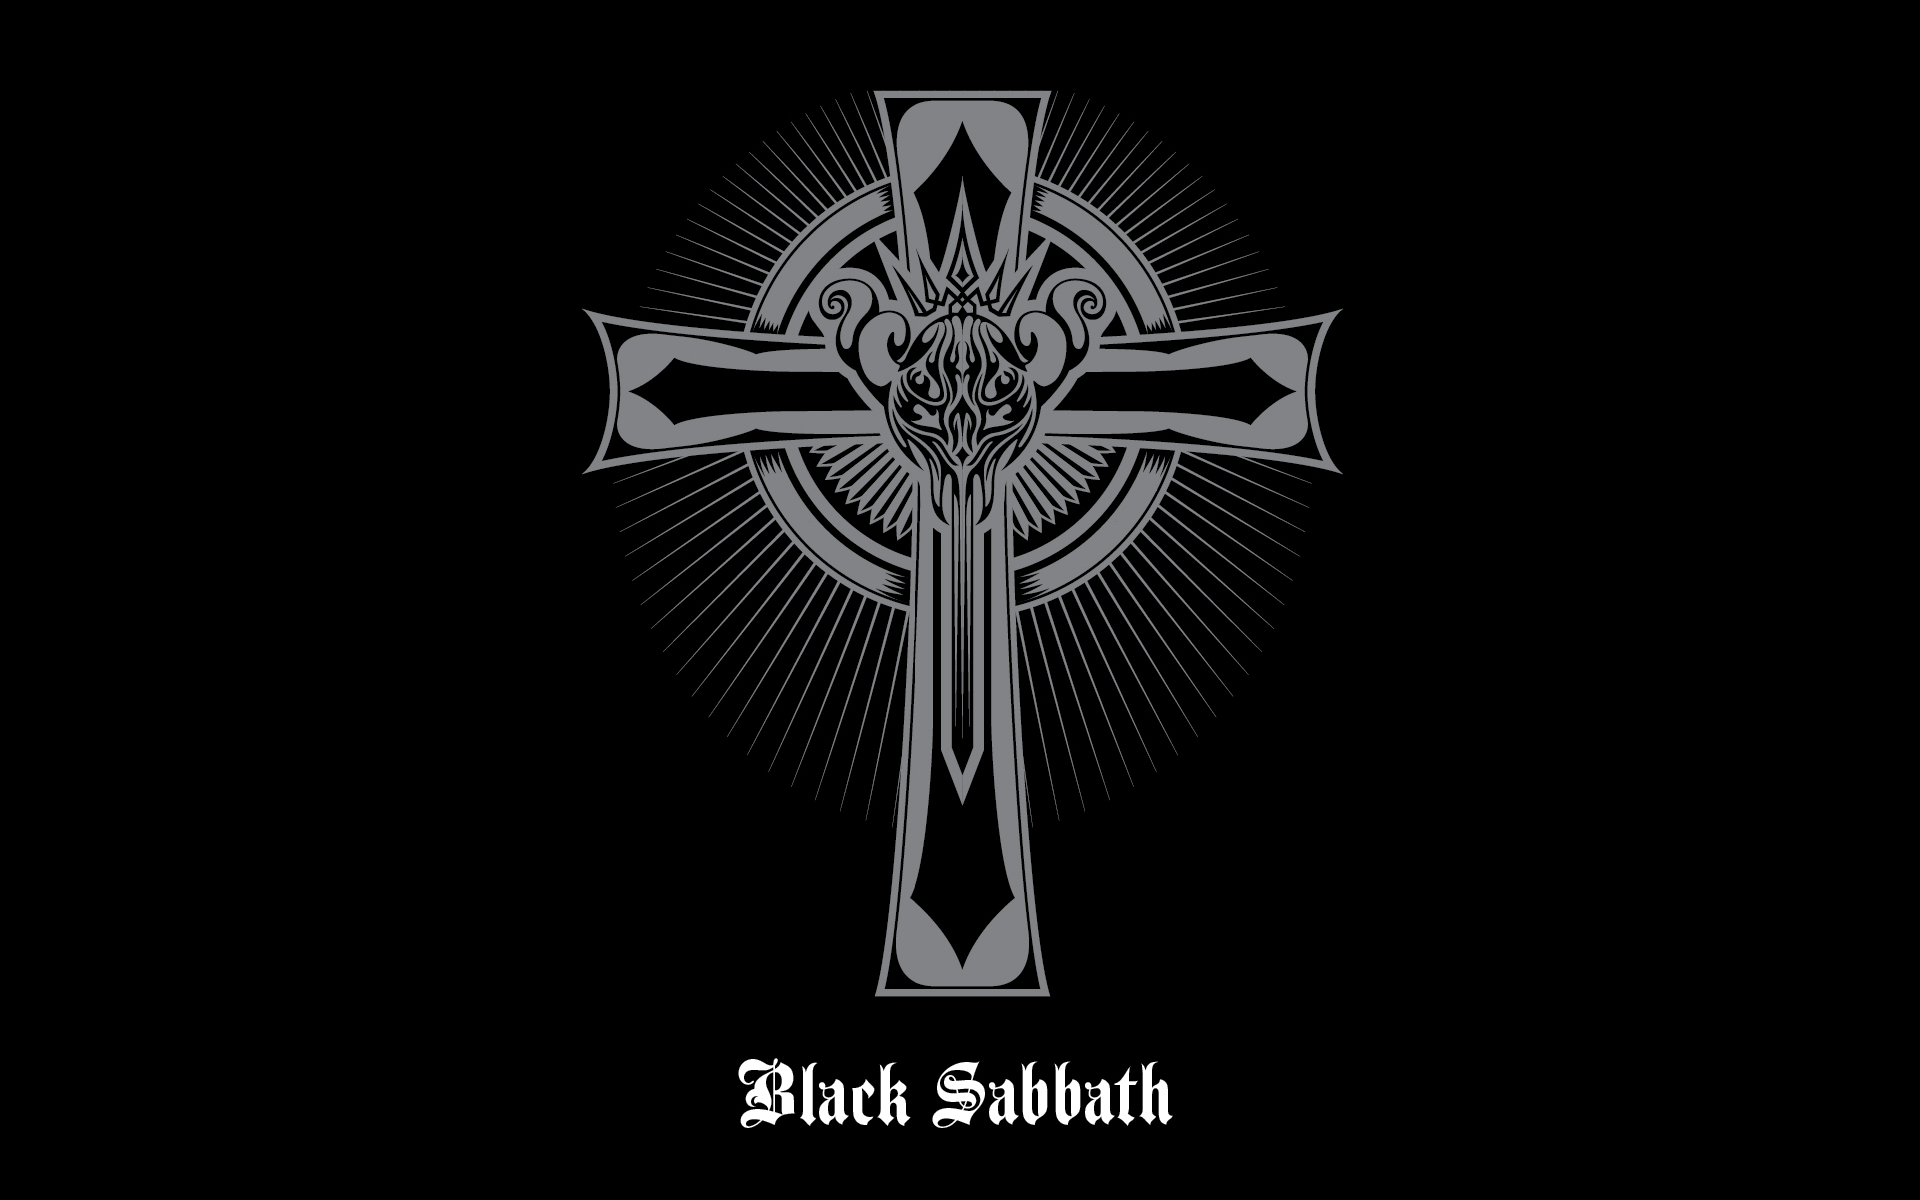 Black Sabbath Logo Wallpapers - Wallpaper Cave